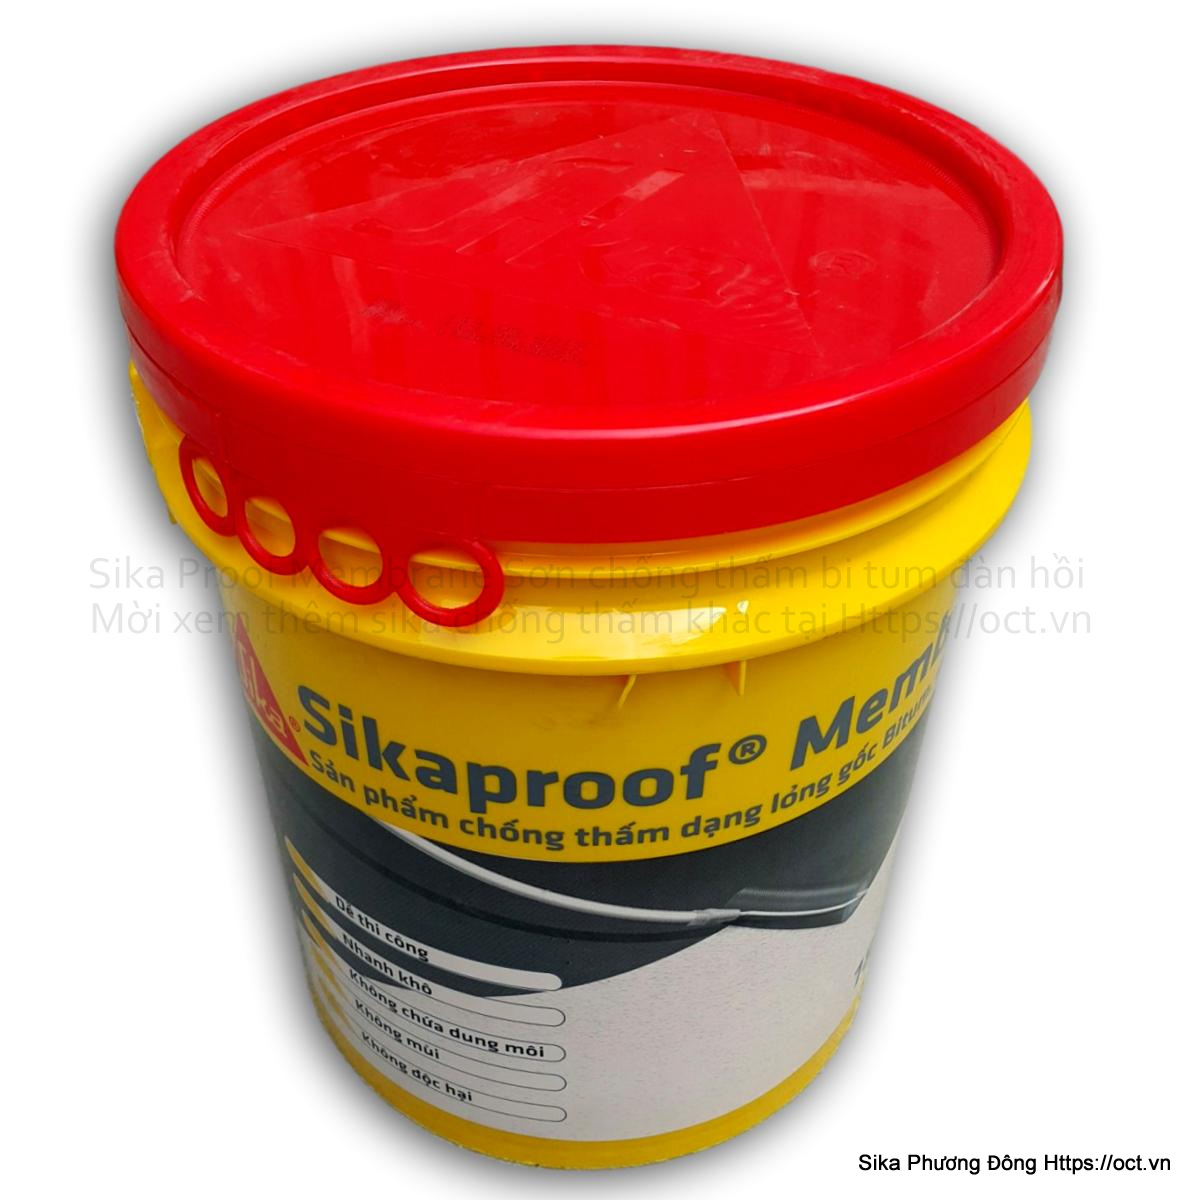 Sikaproof Membrane-18Kg sẽ giúp ngăn chặn 100% sự thấm nước. Hãy xem hình ảnh để hiểu rõ tại sao đây là sản phẩm tốt nhất.